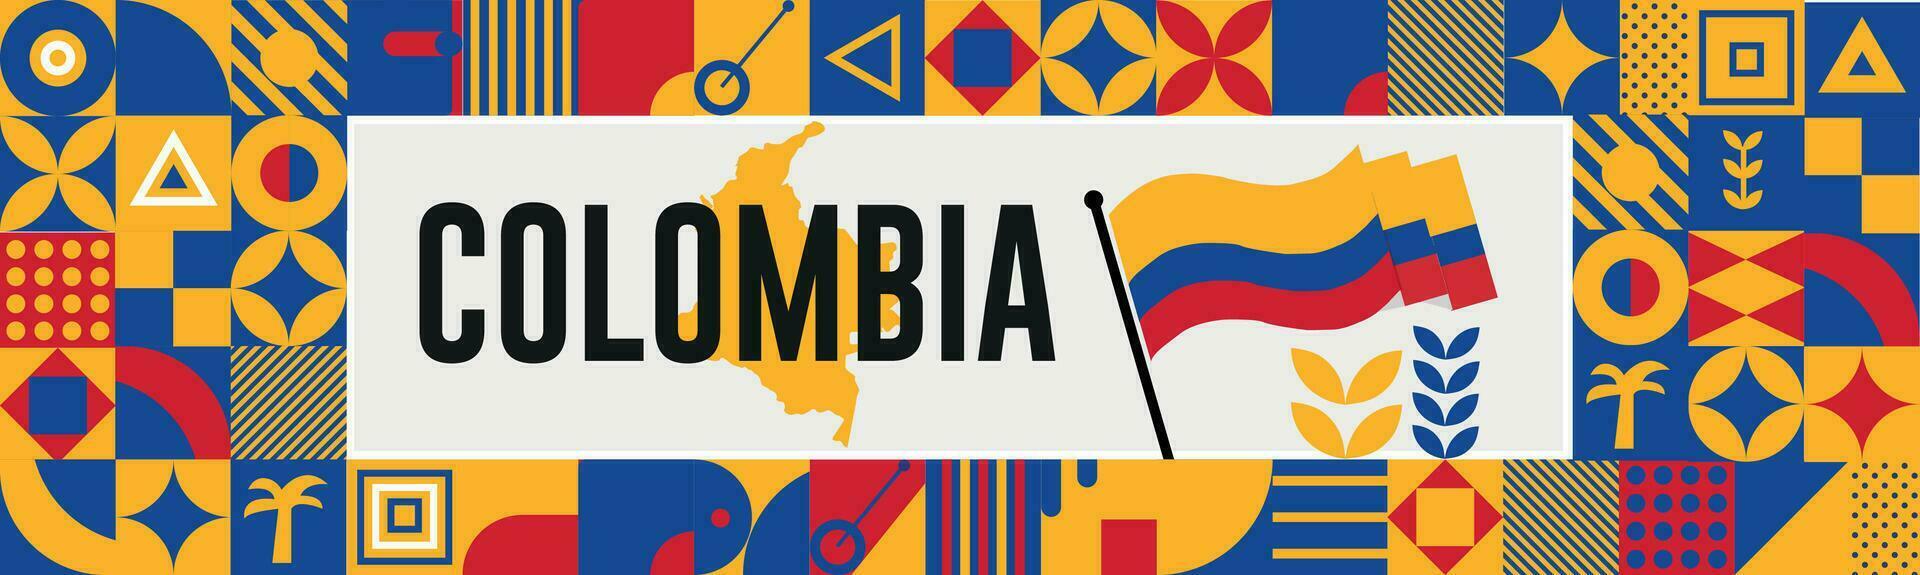 Colombia carta geografica e sollevato pugni. nazionale giorno o indipendenza giorno design per Colombia celebrazione. moderno retrò design con astratto icone. vettore illustrazione.